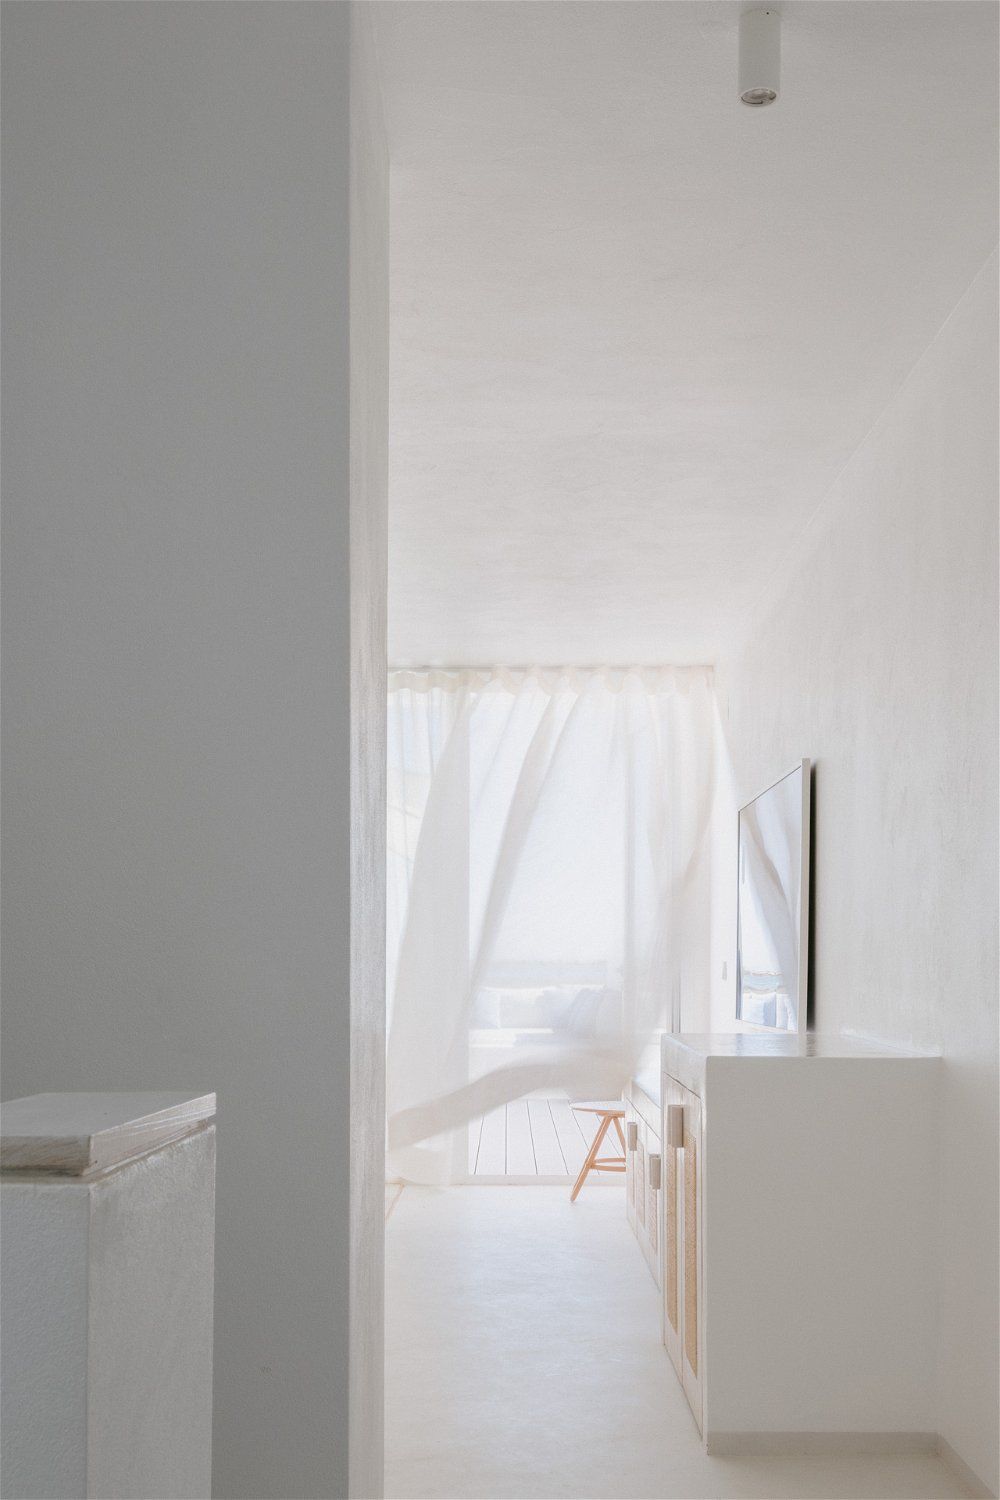 3-bedroom villa with private terrace in Fuseta, Faro. 2454947384